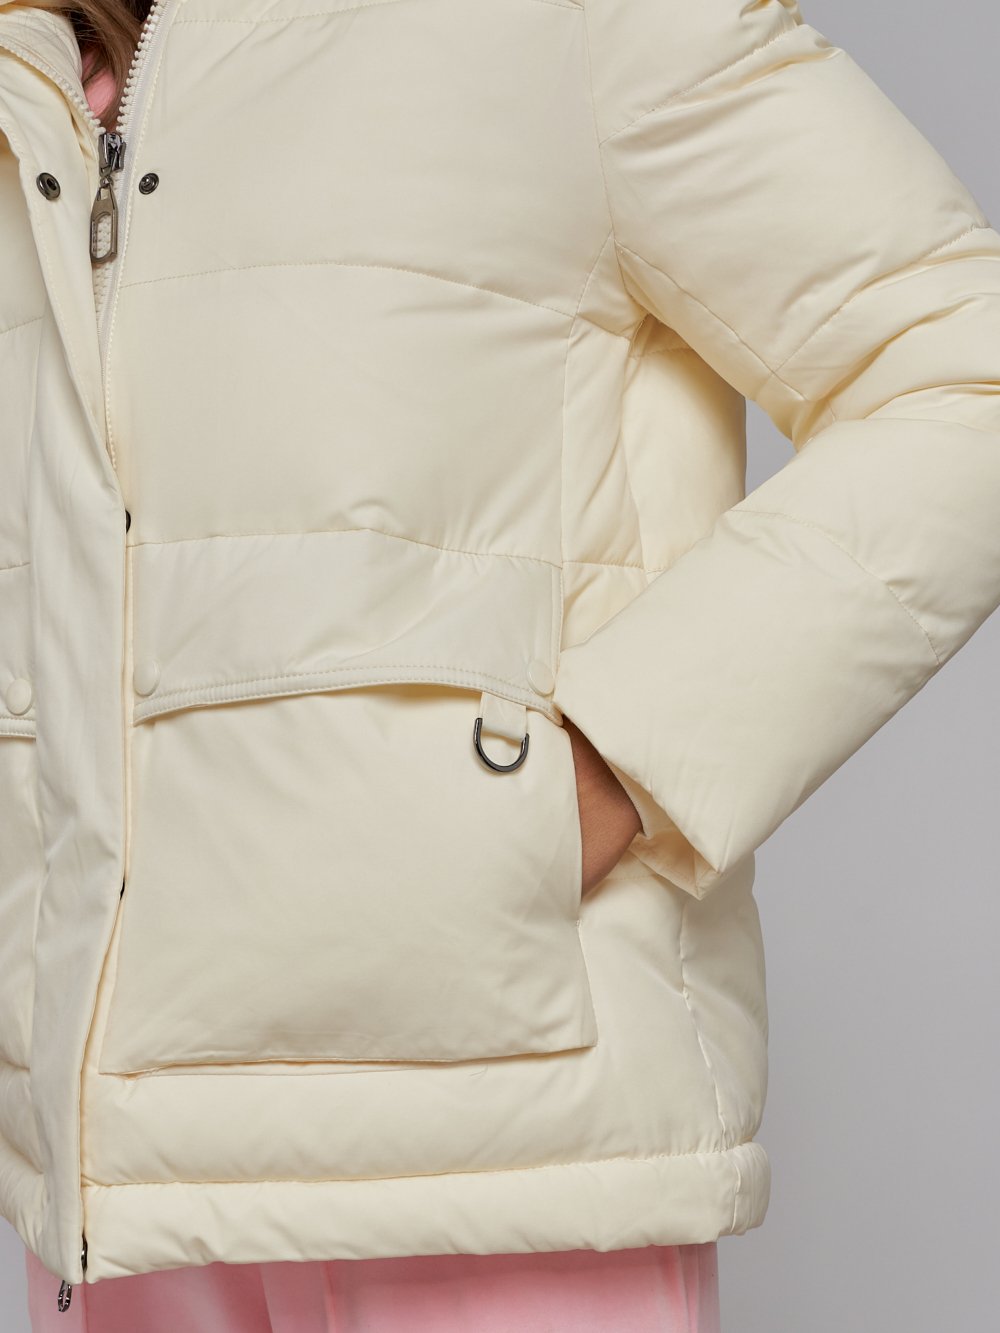 Купить куртку зимнюю оптом от производителя недорого в Москве 52303SJ 1